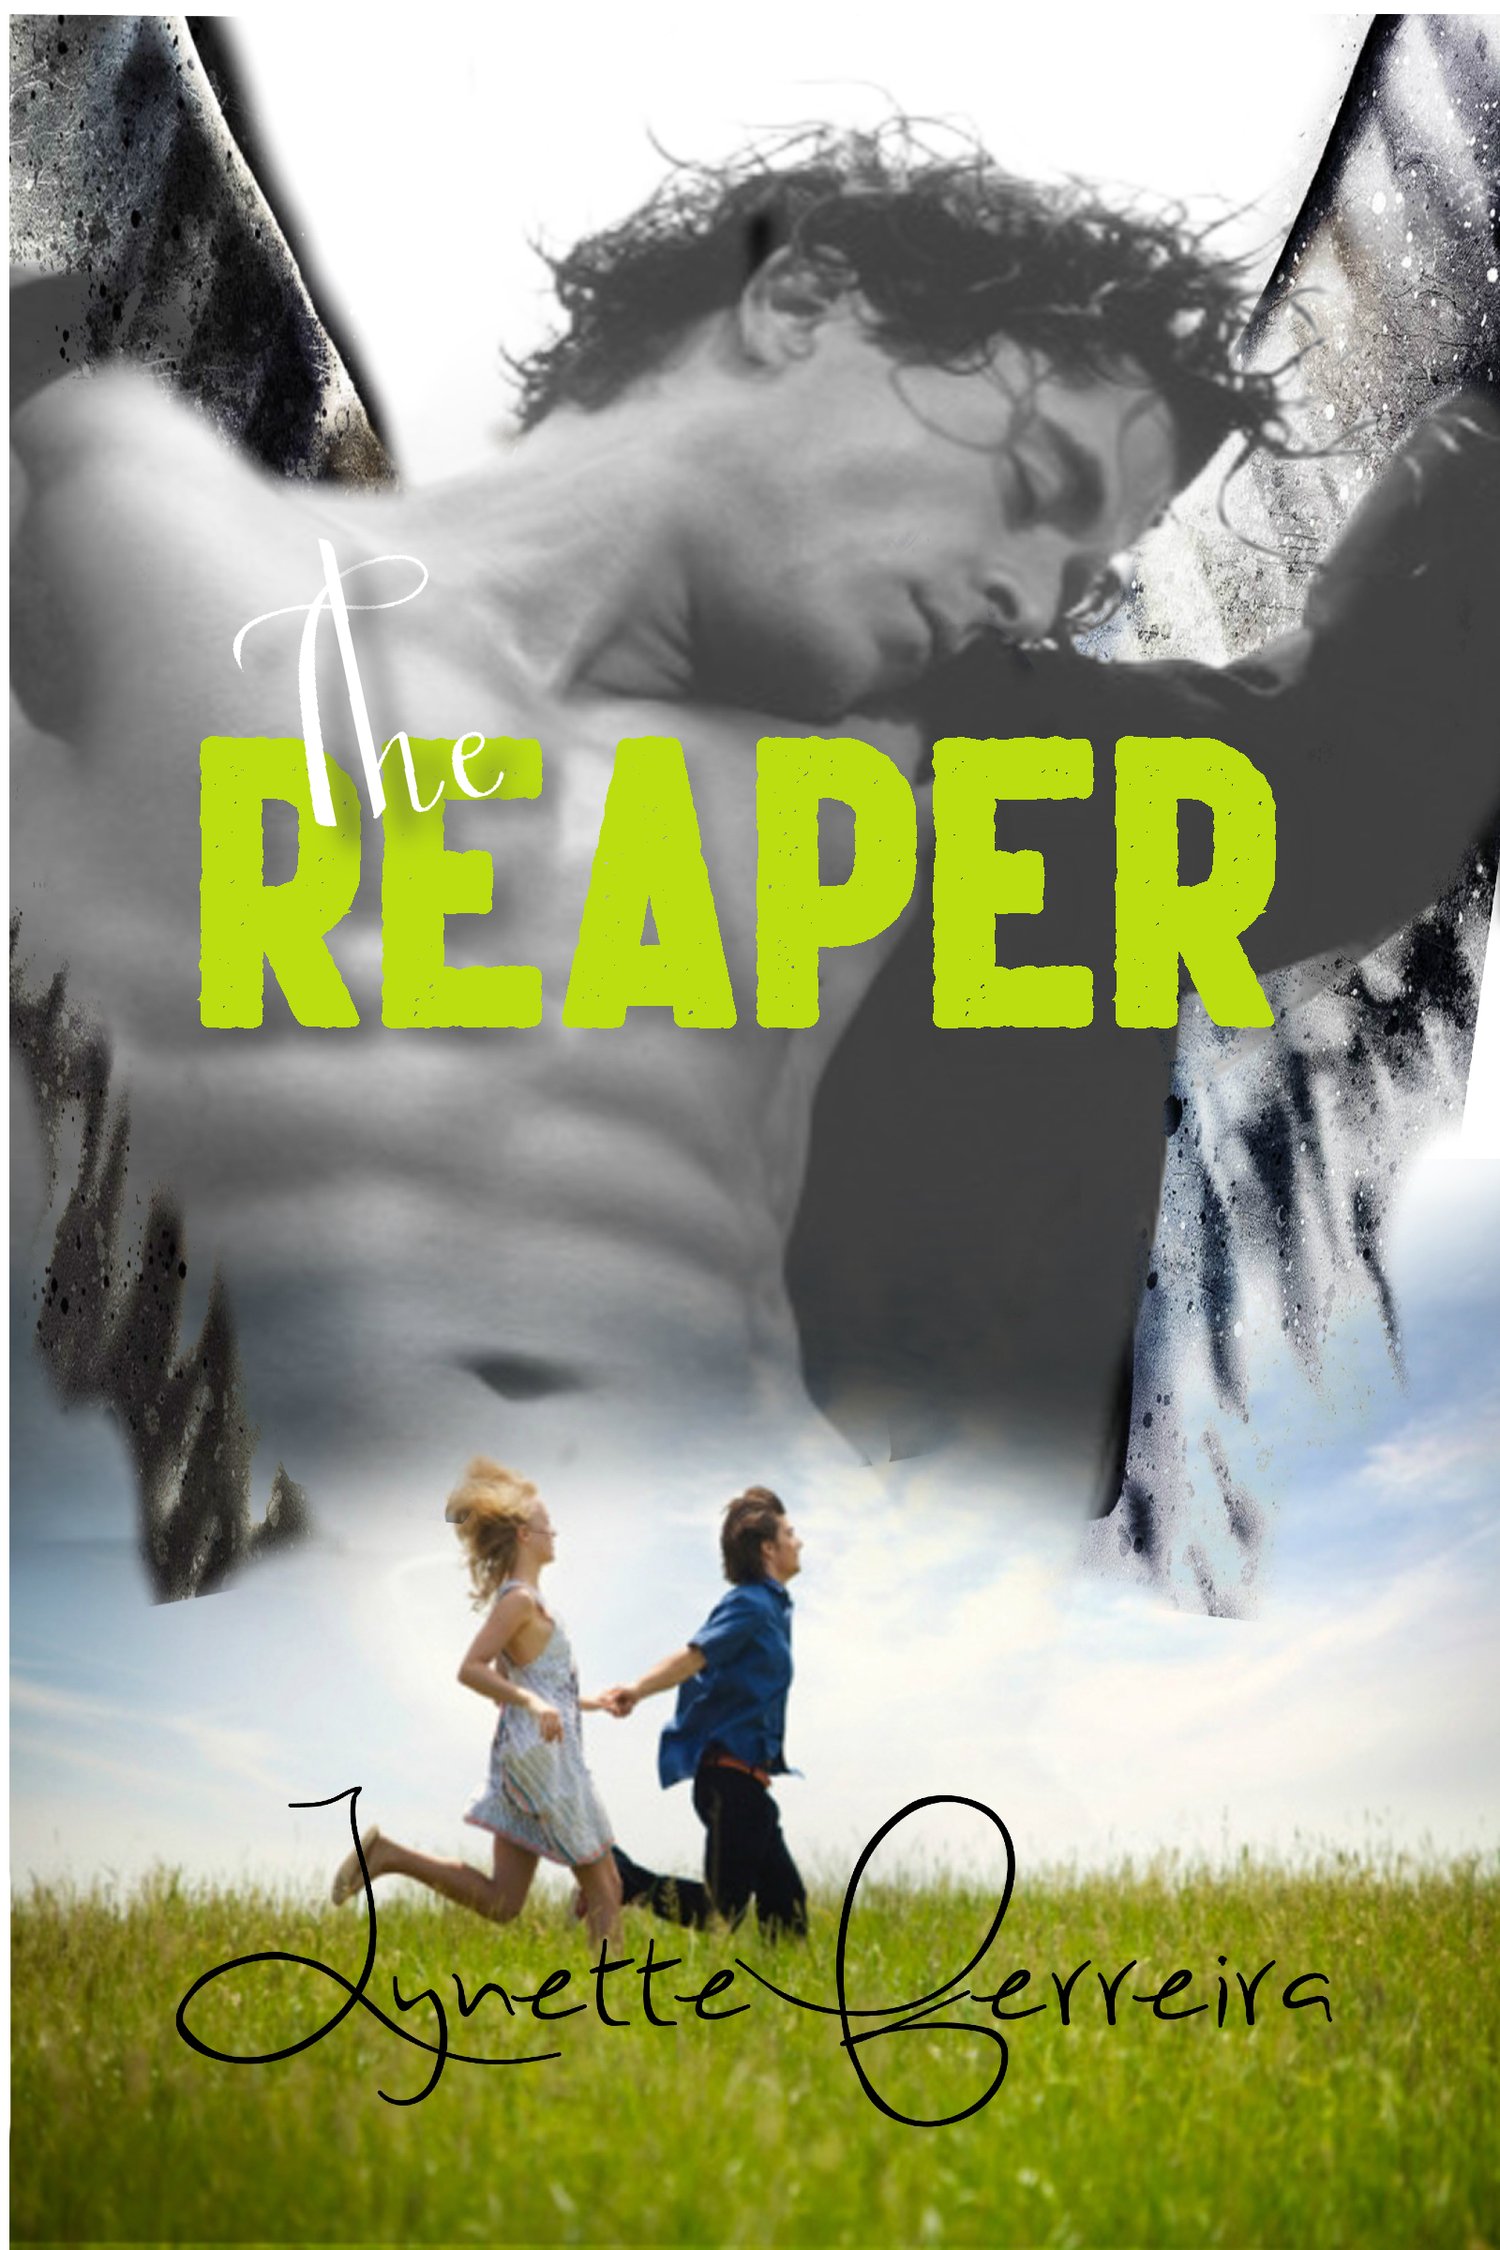 The Reaper by Lynette Ferreira